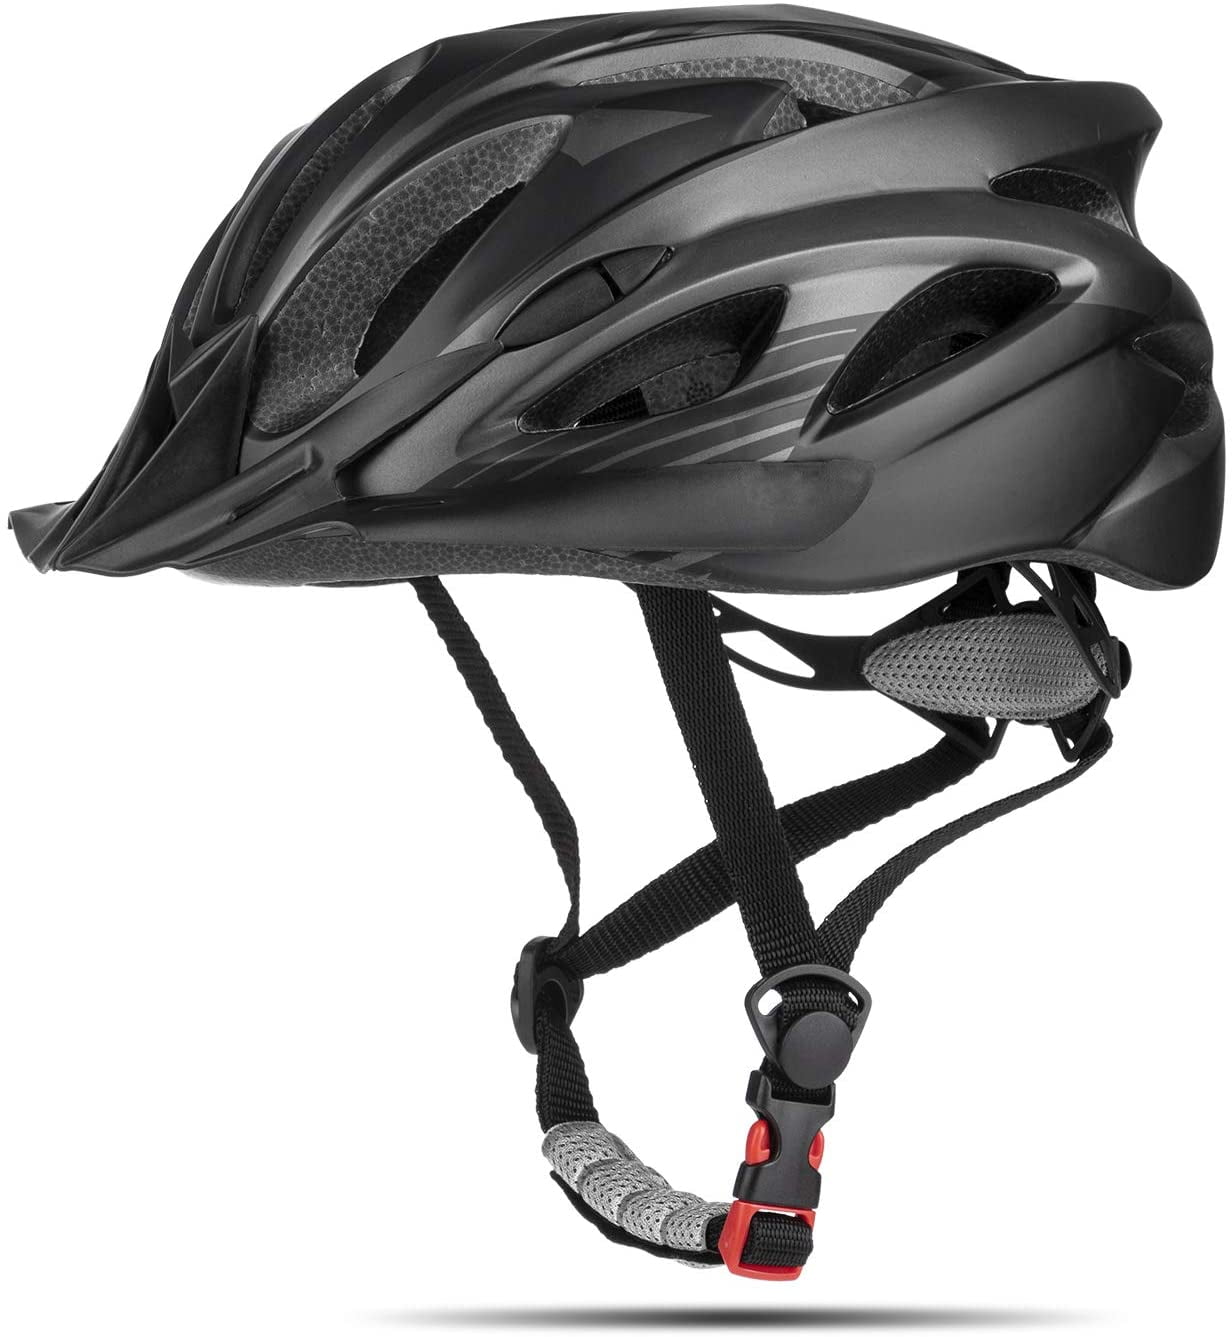 Bicycle Helmet Bike Cycling Adult Adjustable Safety Helmet Visor LED Light Sport 